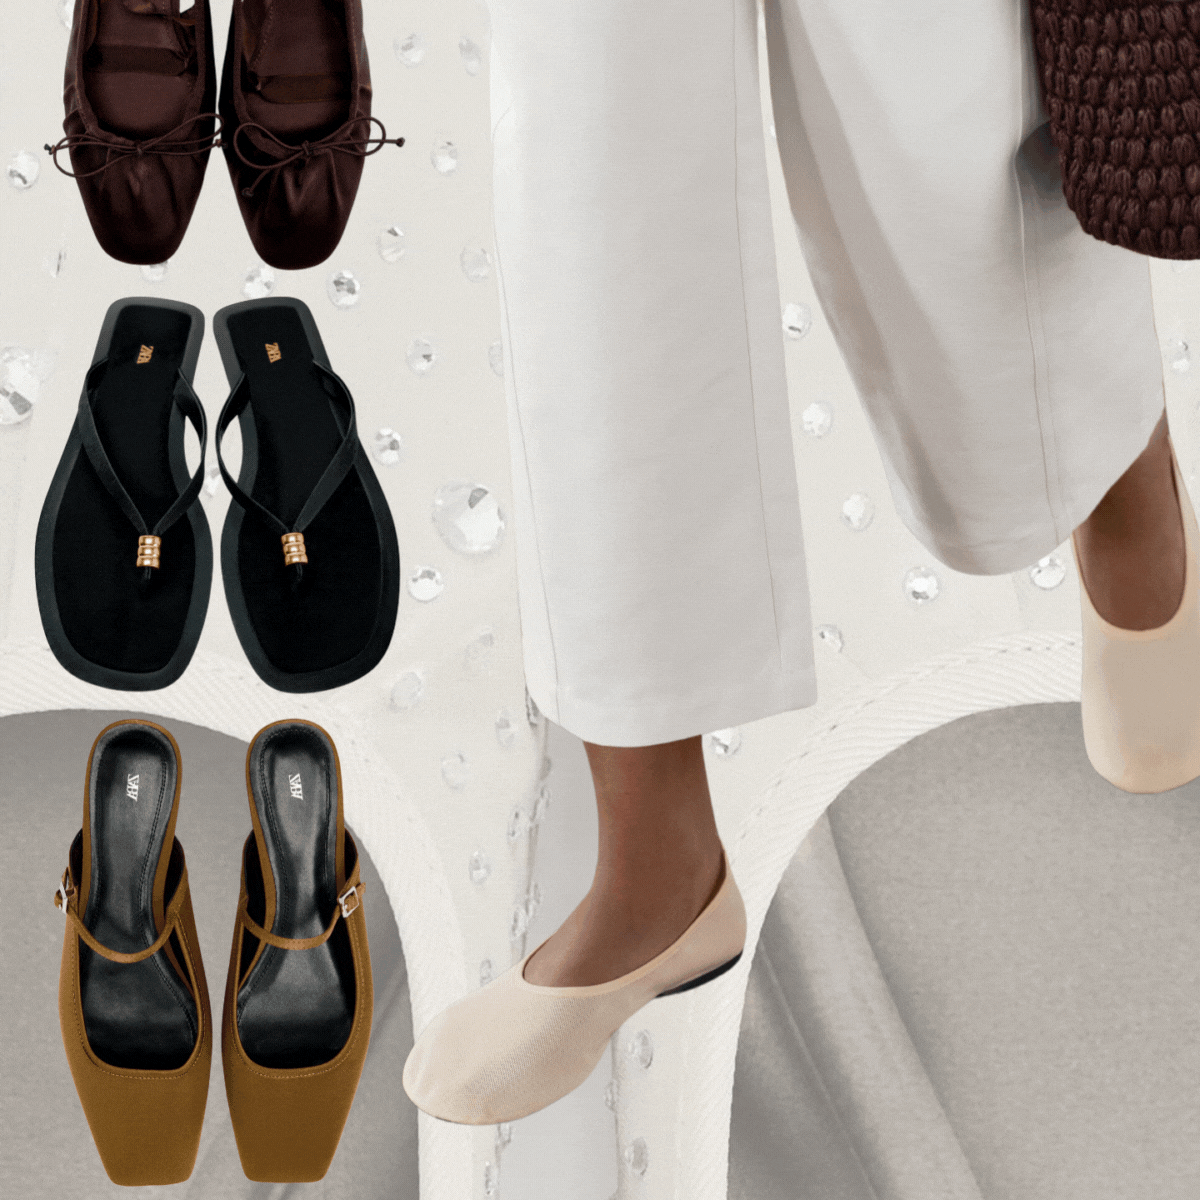 Zara Flat Shoe Trends